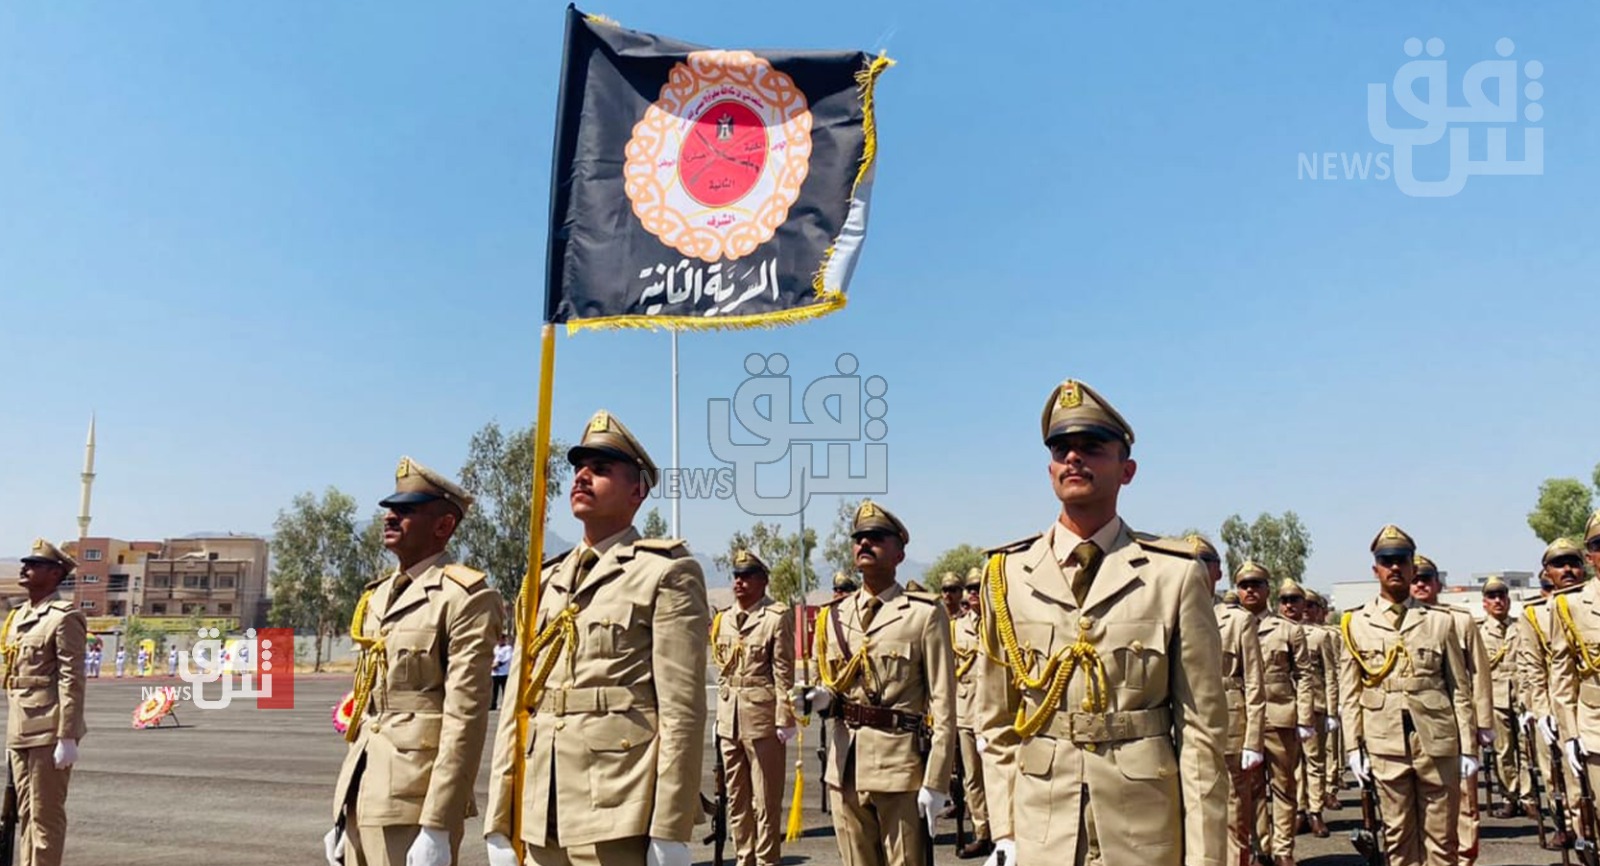 المؤسسة العسكرية العراقية.. دعوات لإبعادها عن التحزب والمحاصصة